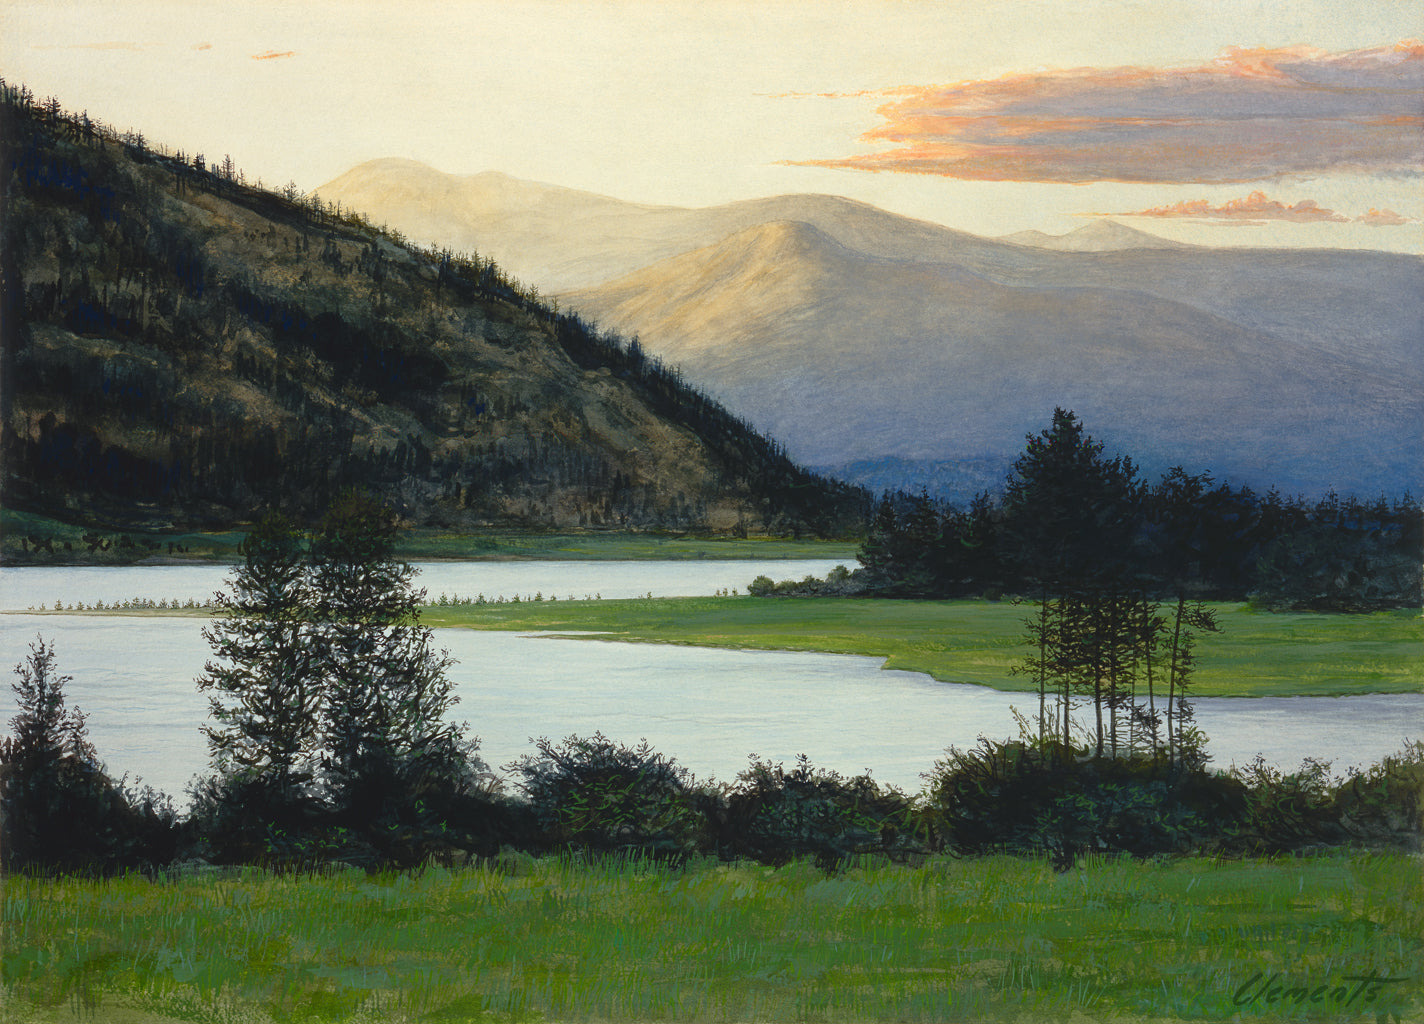 Idaho Pend Oreille River Evening Landscape Painting Giclée Print